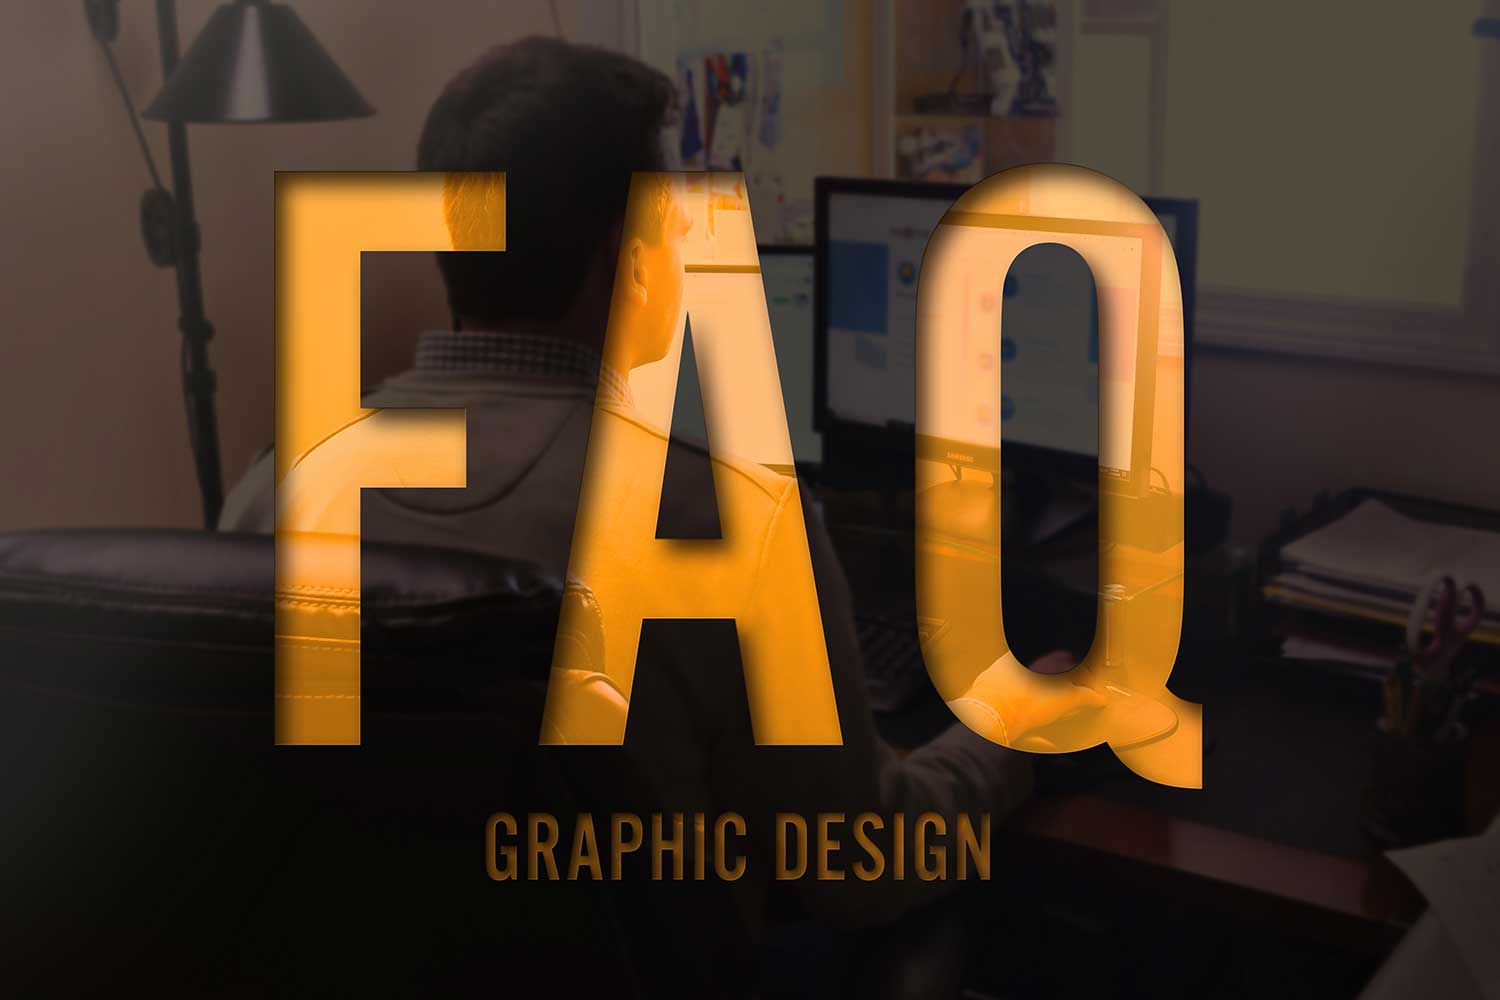 graphic-design-faq Graphic Design FAQs - Make it Active, LLC